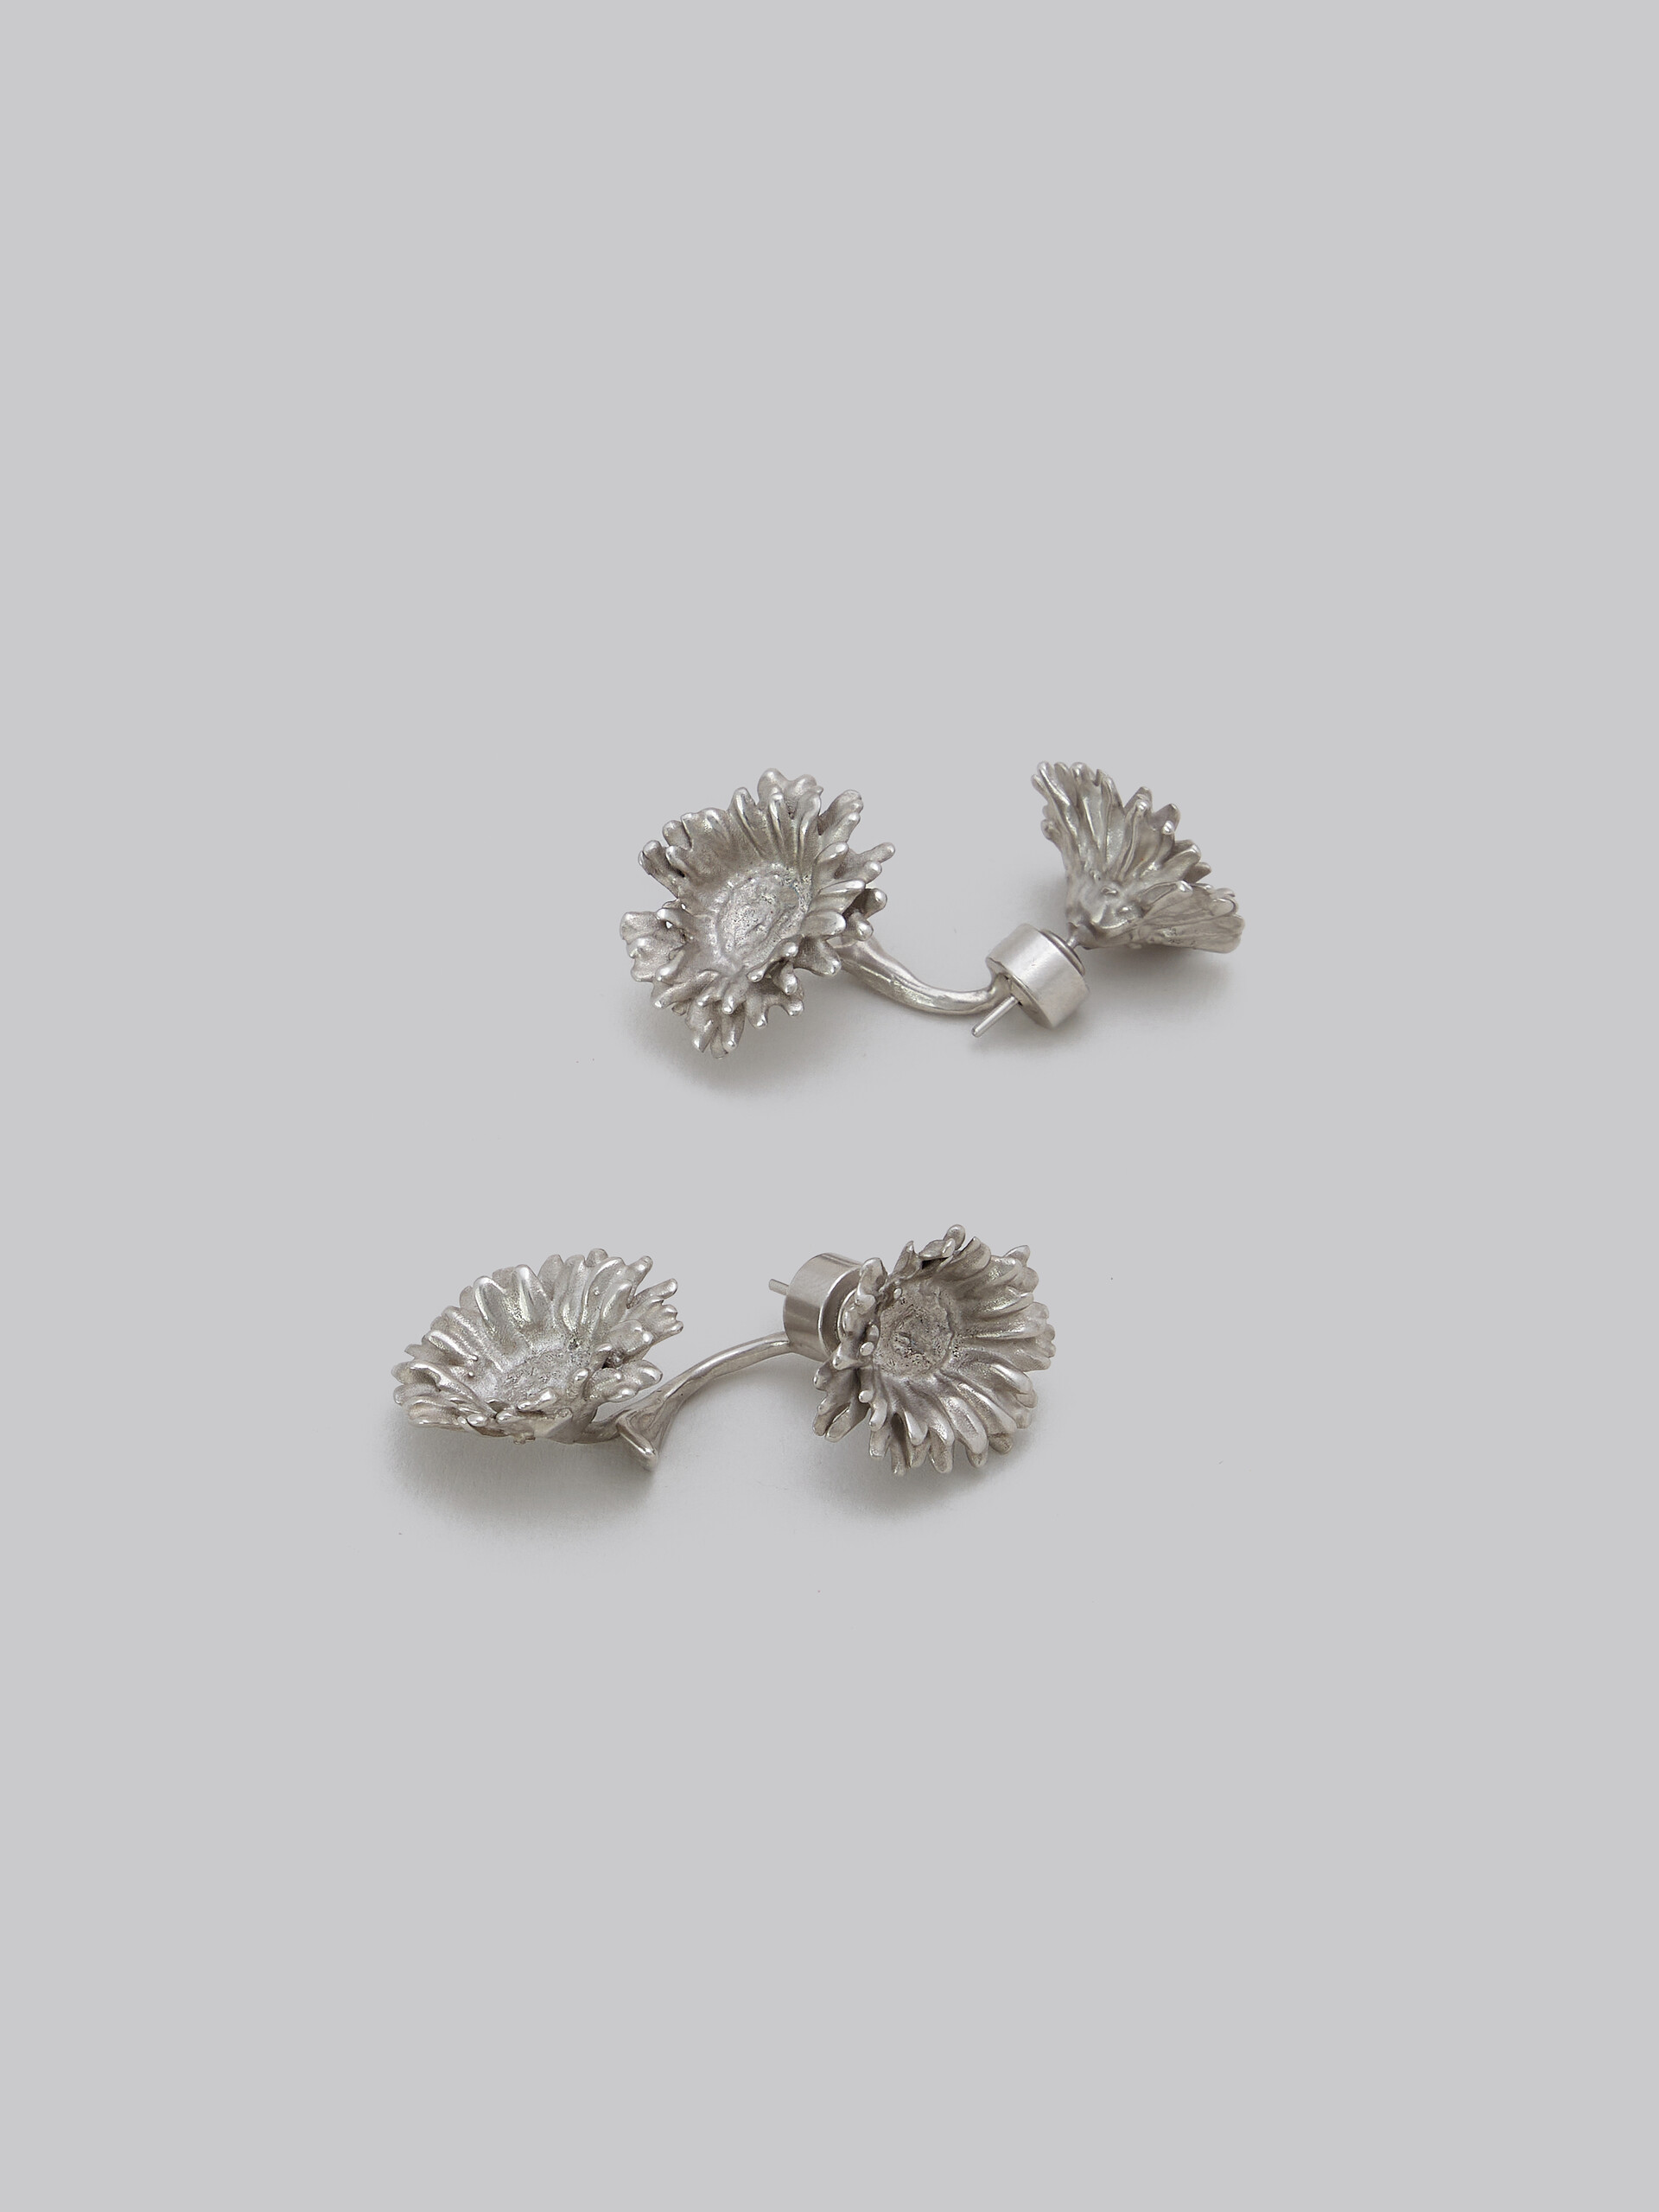 Metal daisy earrings - Earrings - Image 4